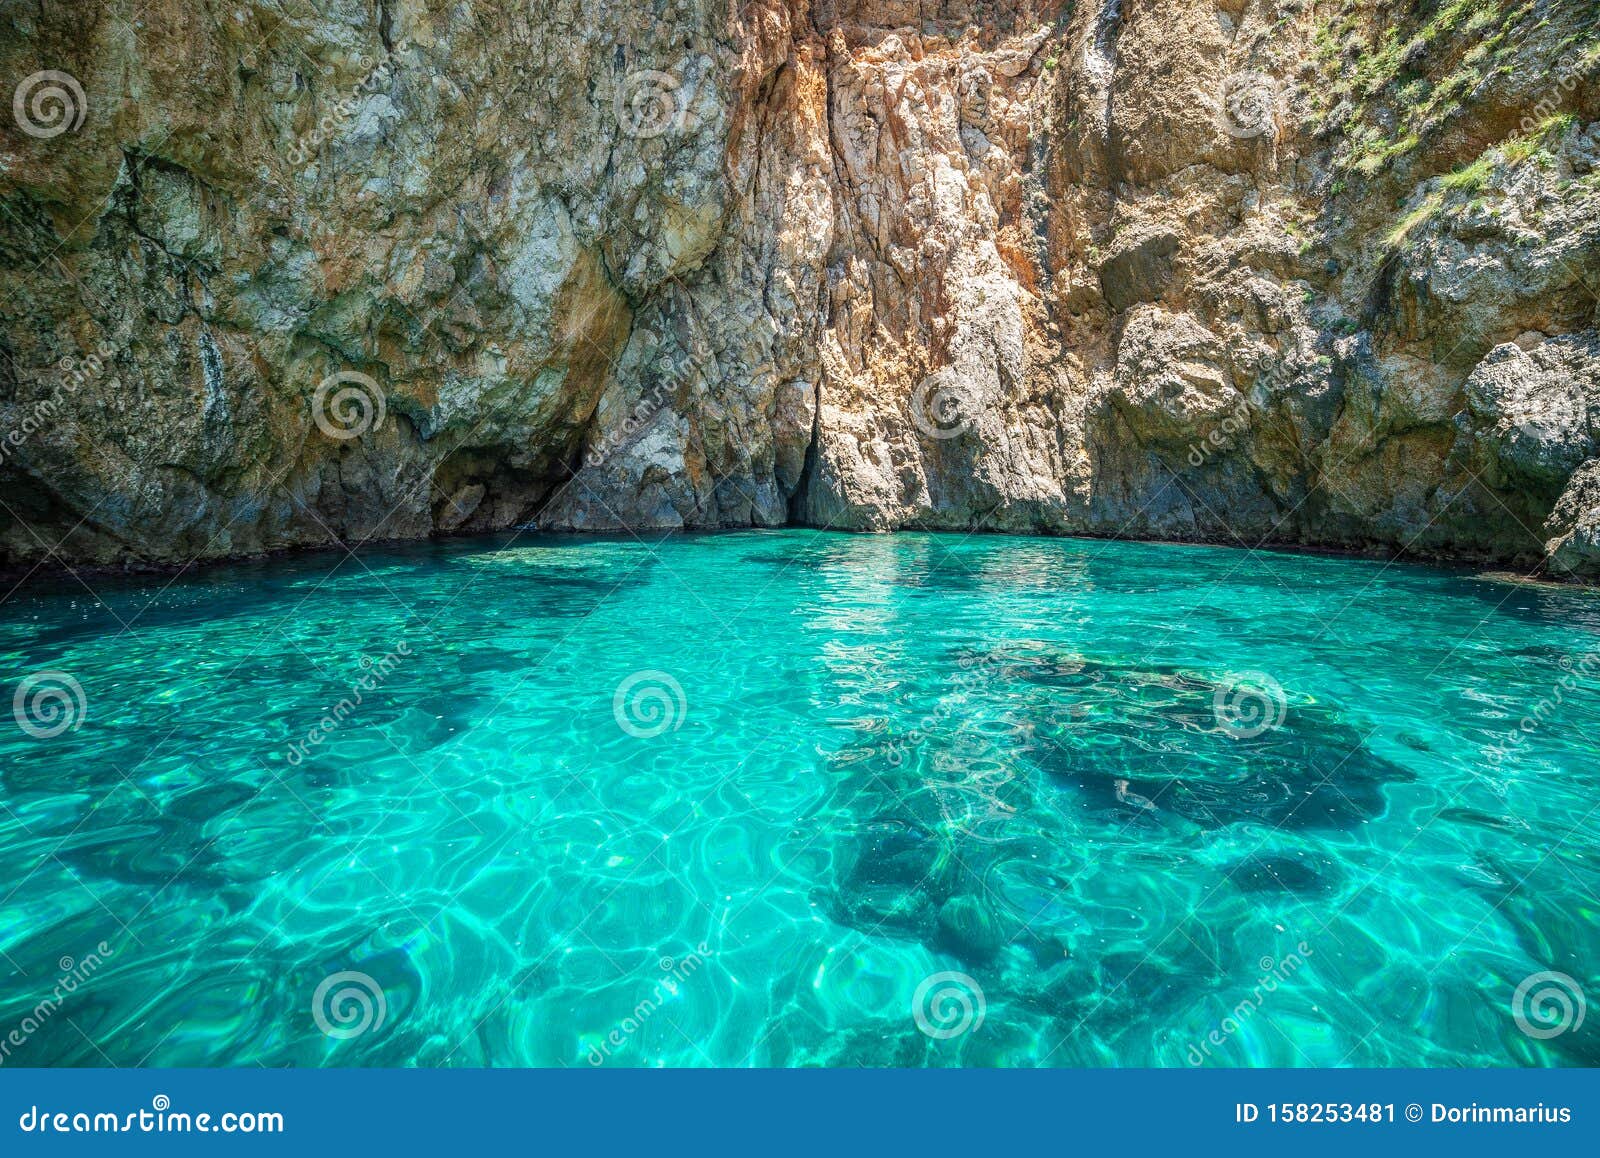 blue lagoon of corfu